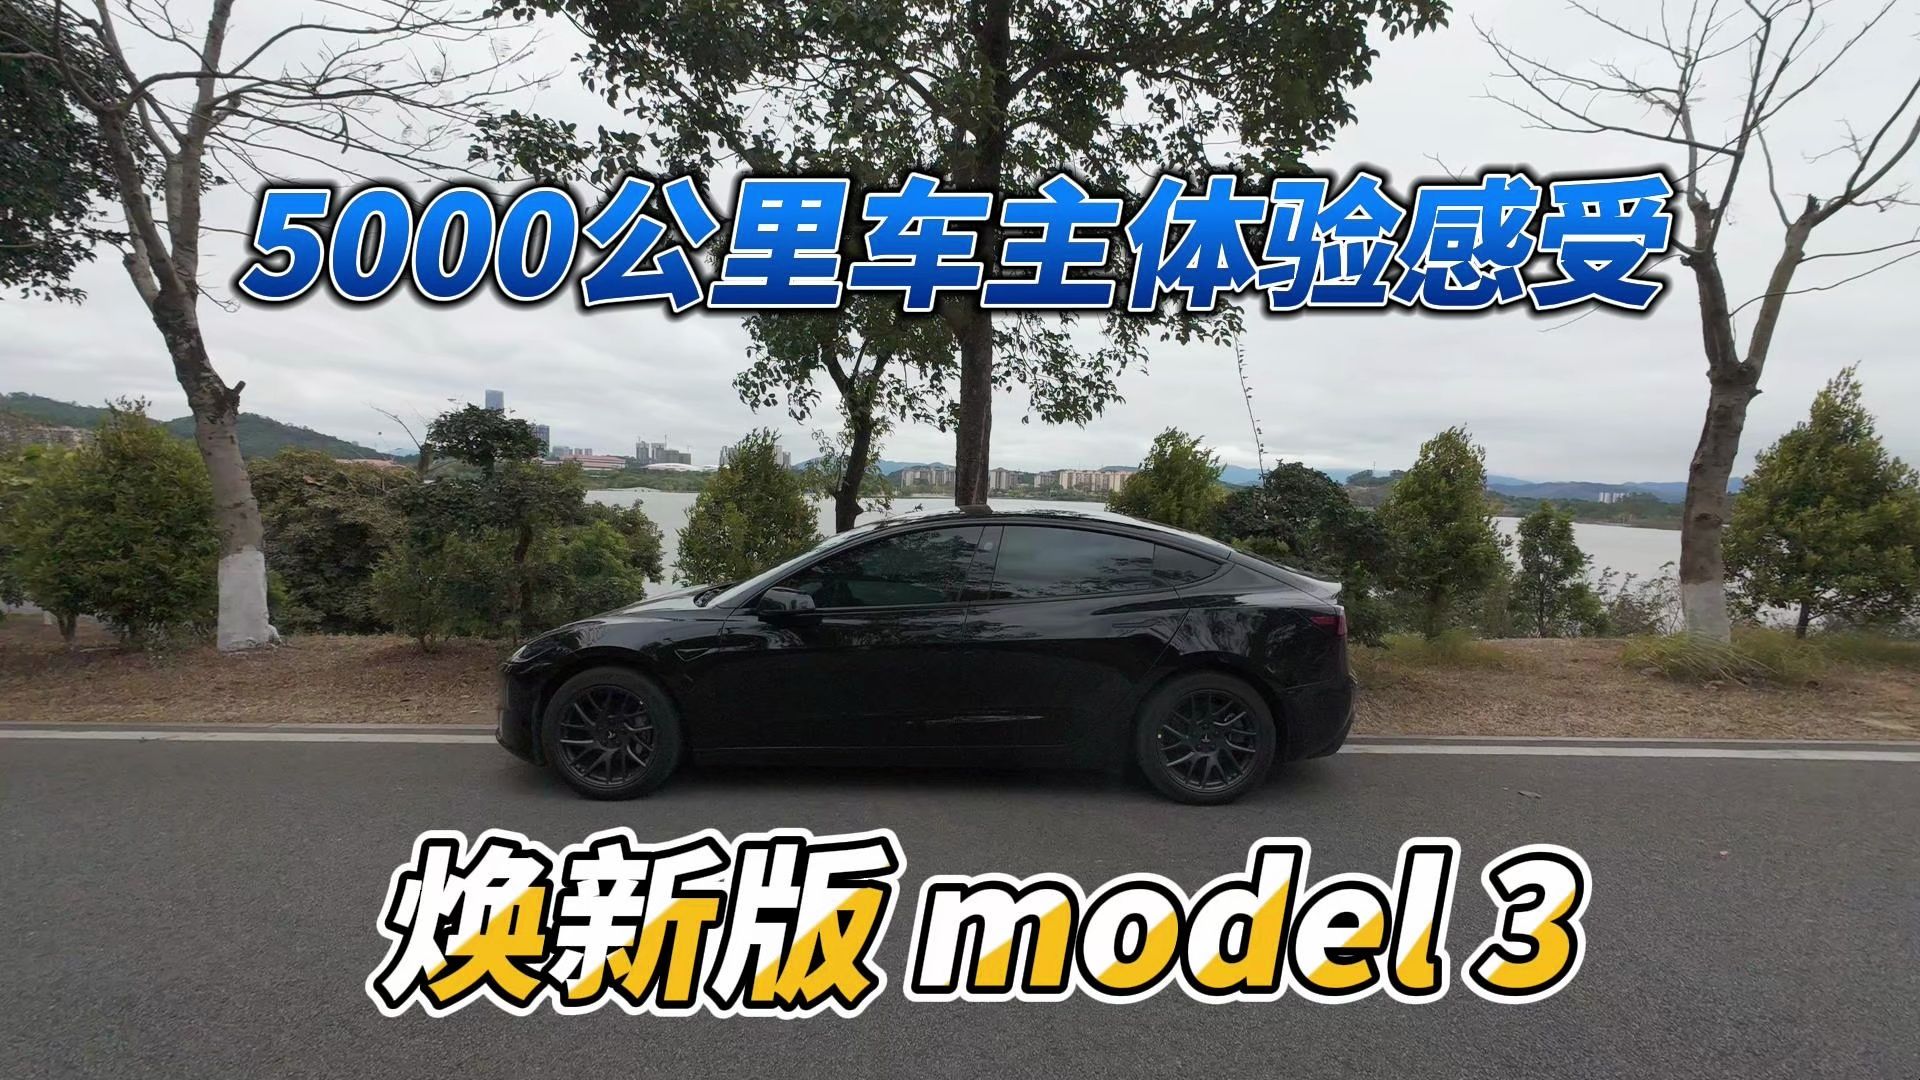 [车主测评] 焕新版model 3开了5000公里什么感受